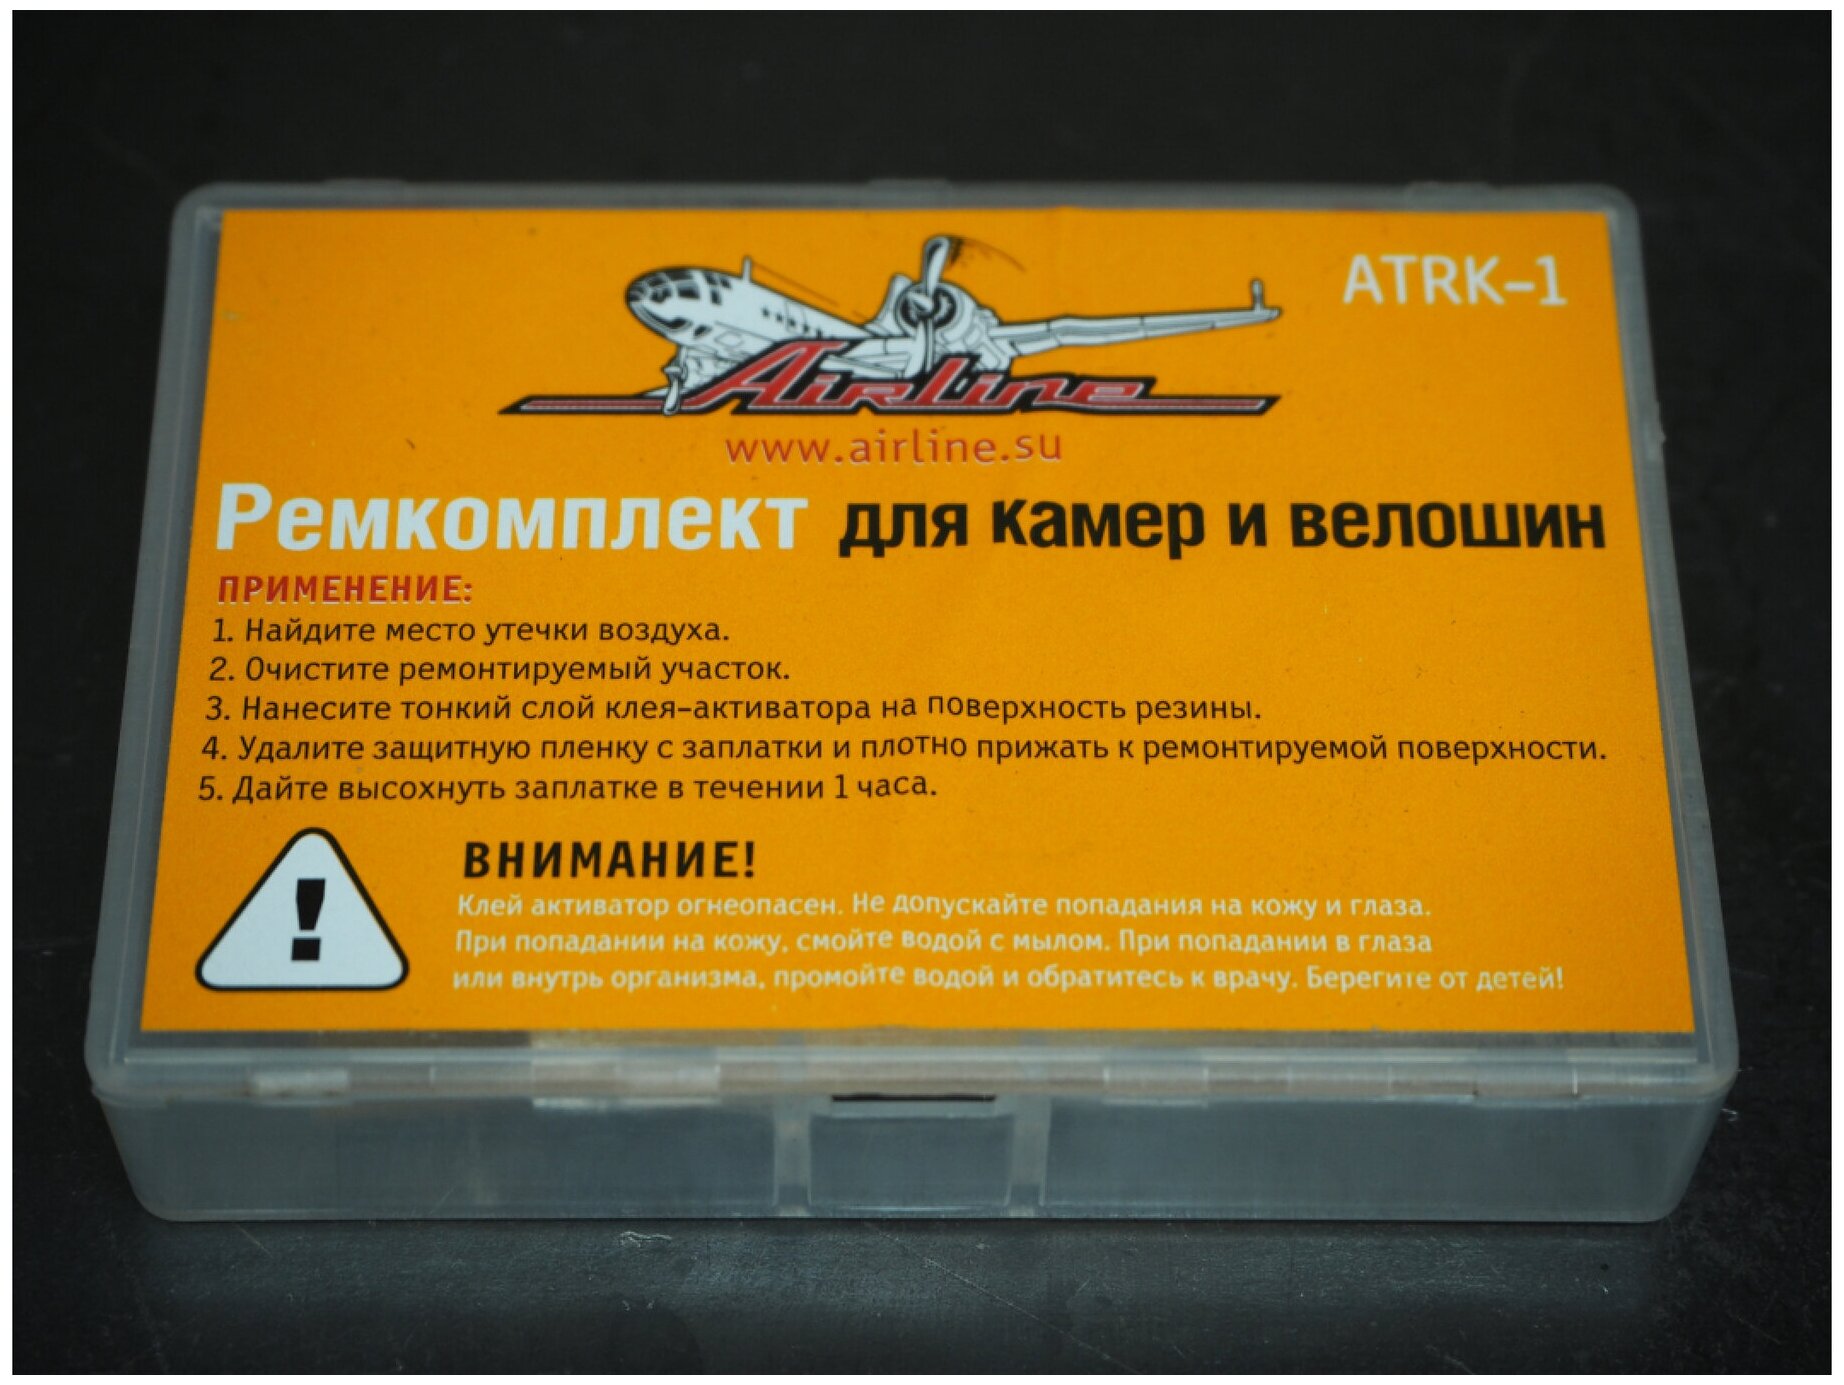 Ремкомплект для камер в кейсе (заплатки 25х25, н/ж бумага, клей-активатор) (ATRK-1)